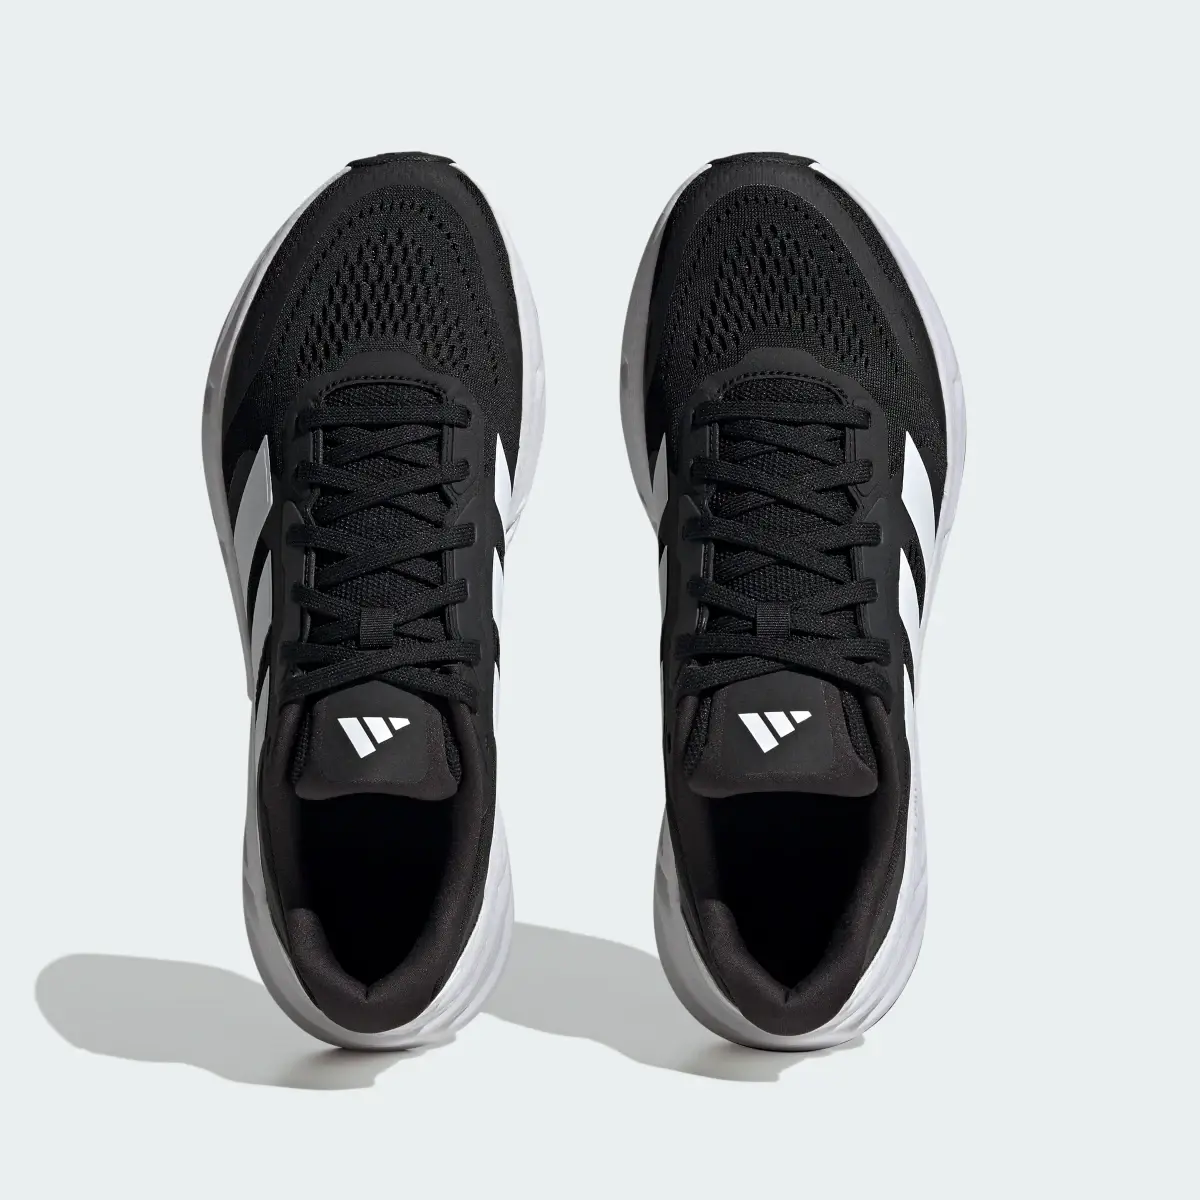 Adidas Questar Ayakkabı. 3